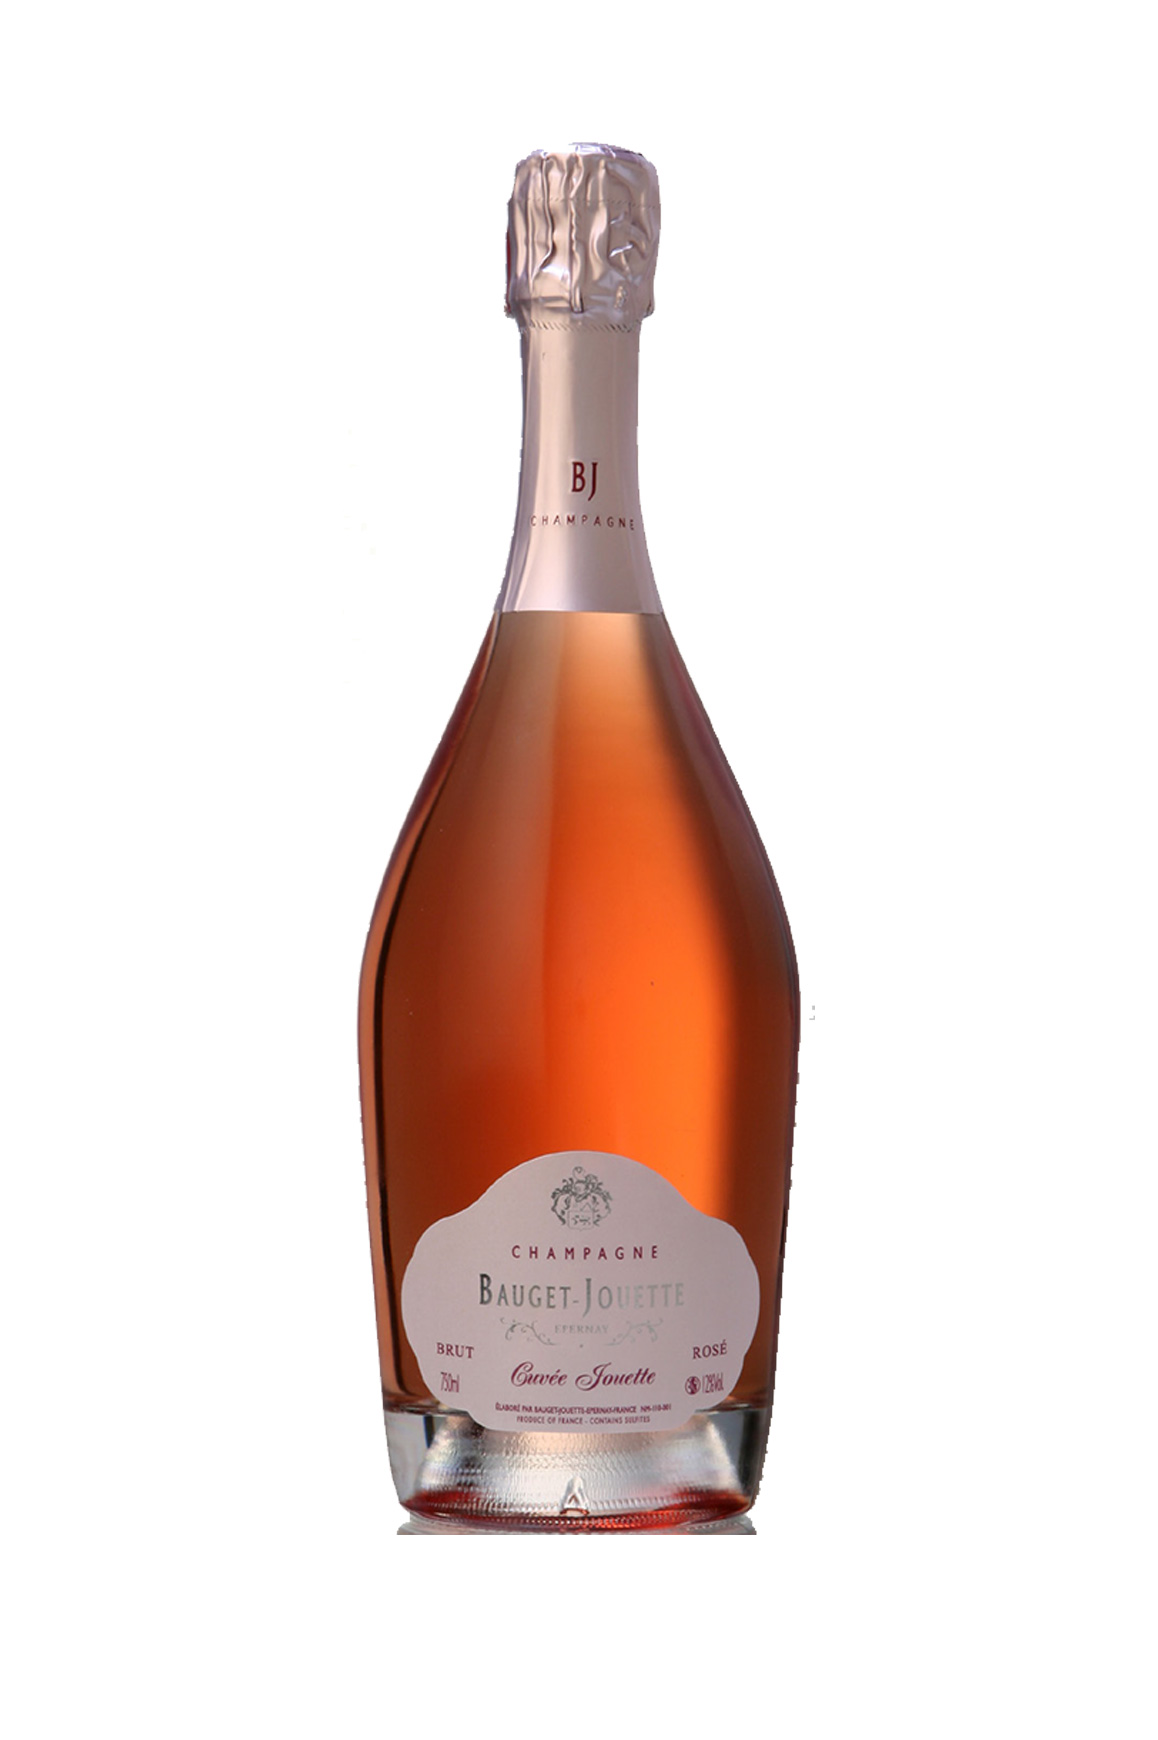 Cuvée Jouette Rosé Millésime 2014 Champagne Bauget-jouette